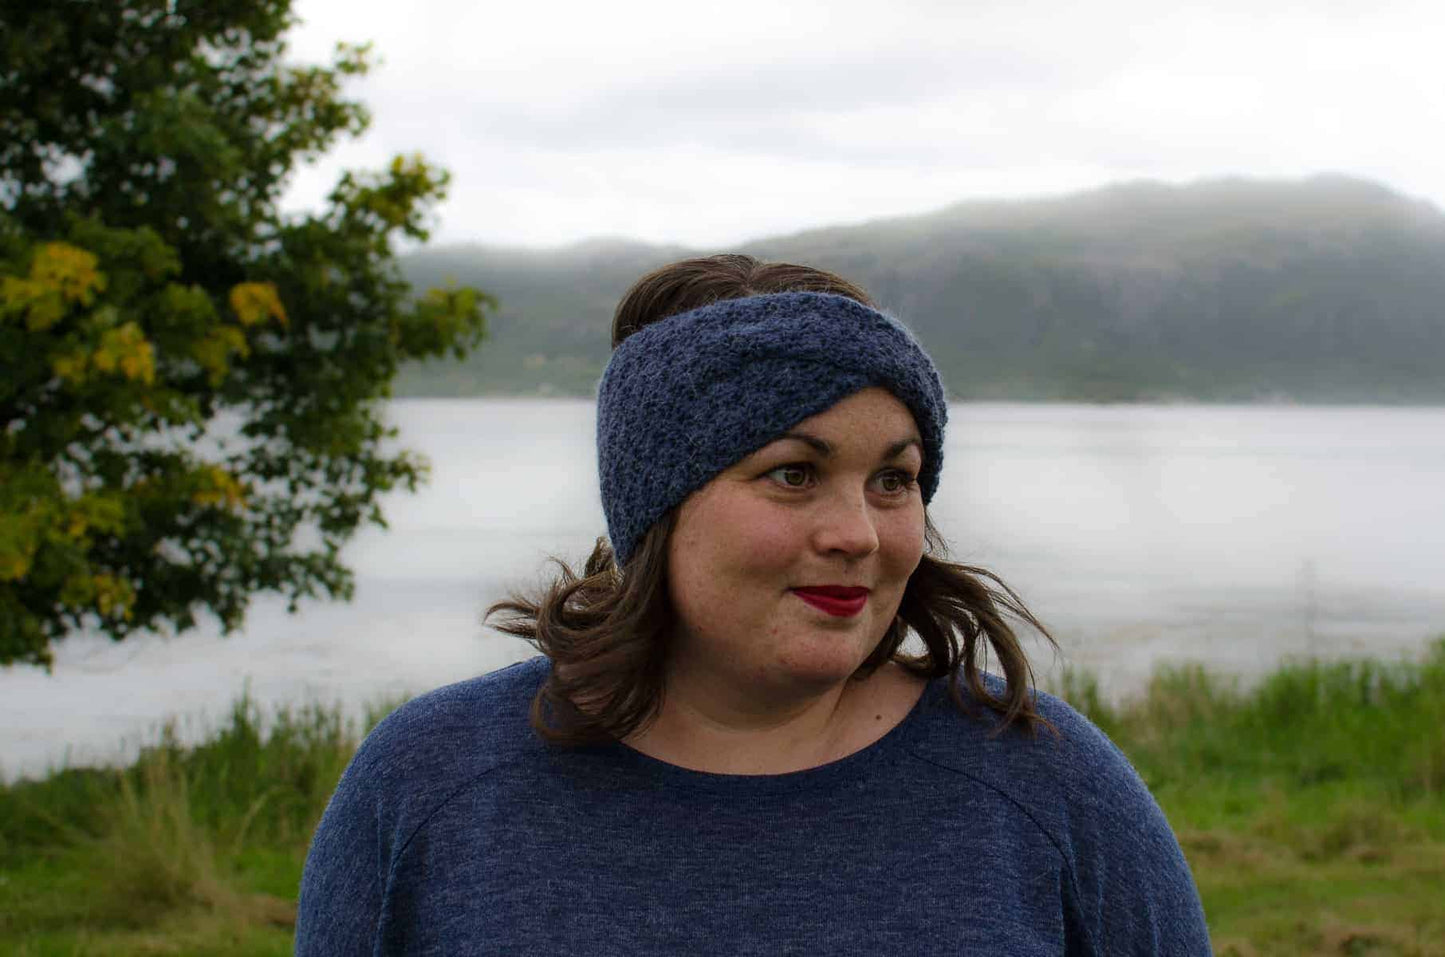 Lunt Twisted Headband Crochet Pattern